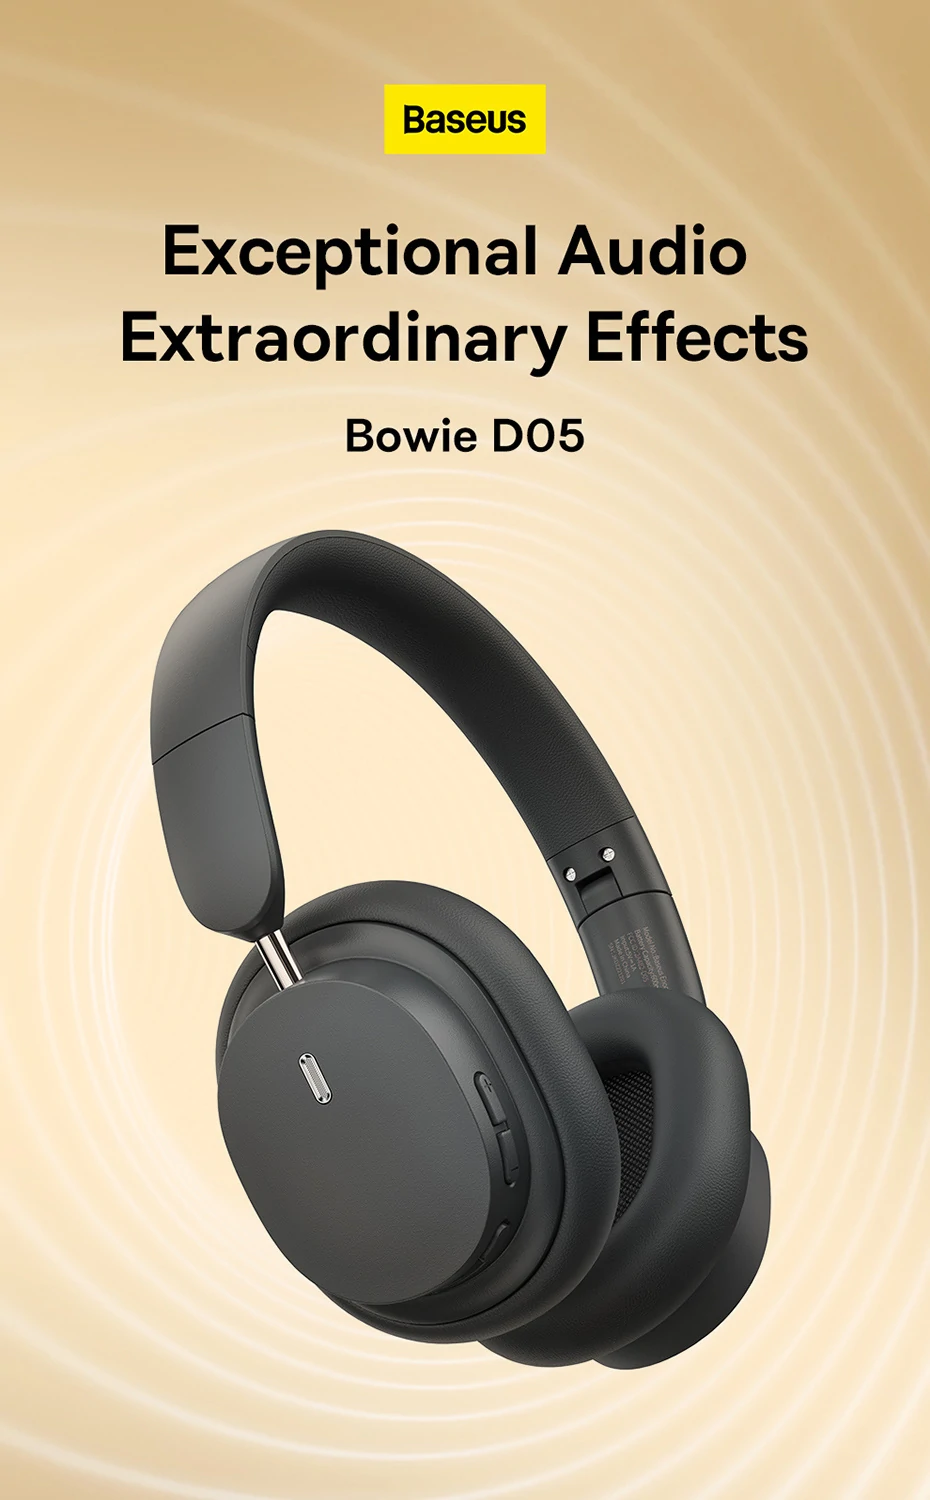 Baseus Bowie D05 Bluetooth-hoofdtelefoon met speciale 3D-mogelijkheden